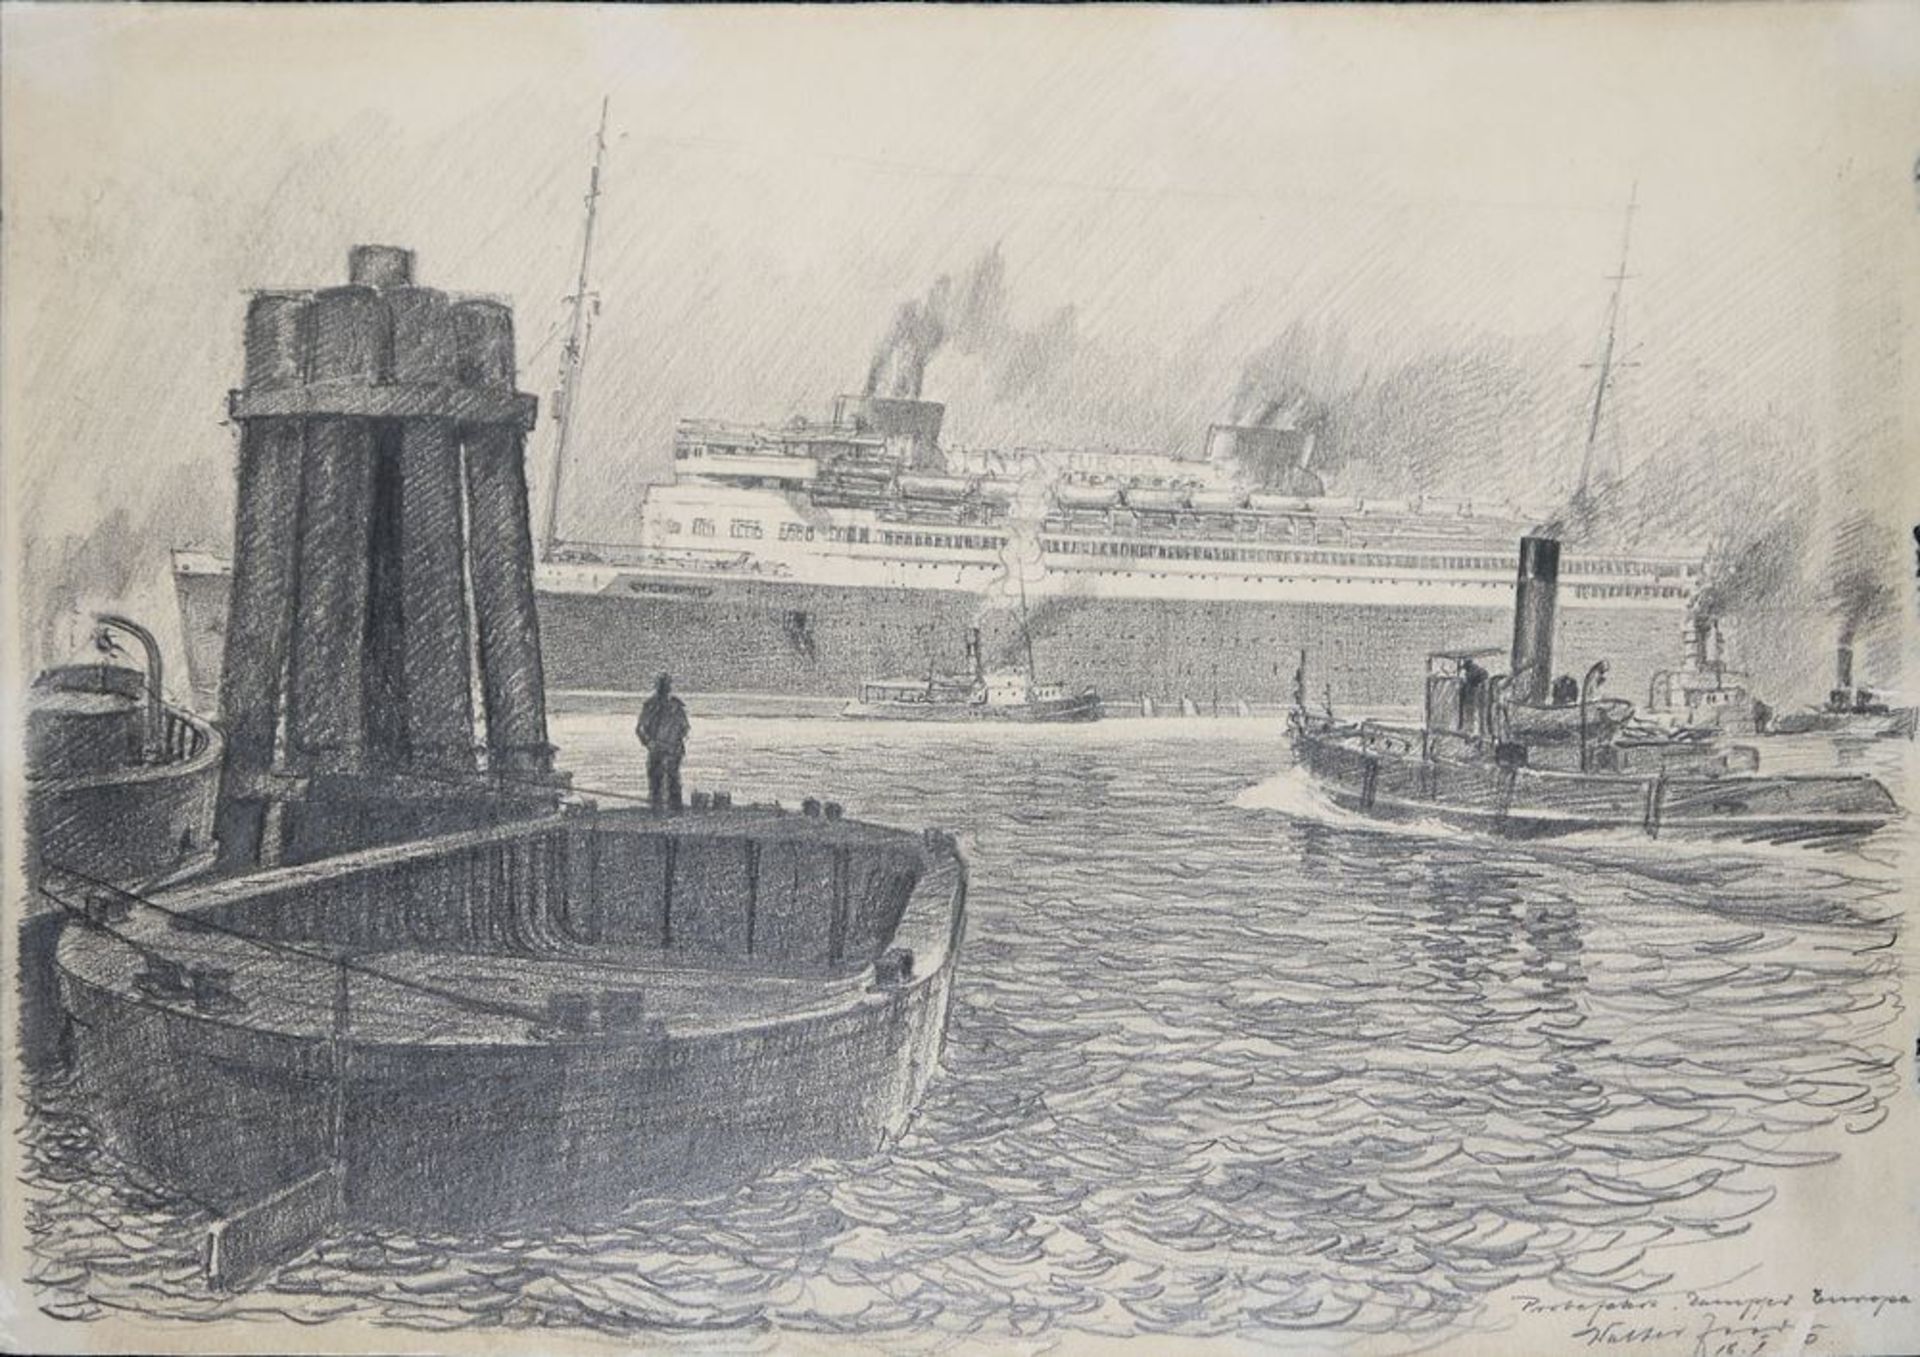 Walter Zeeden, " Probefahrt Dampfer Europa in Hamburg am 22.2.1930 ", Zeichnung